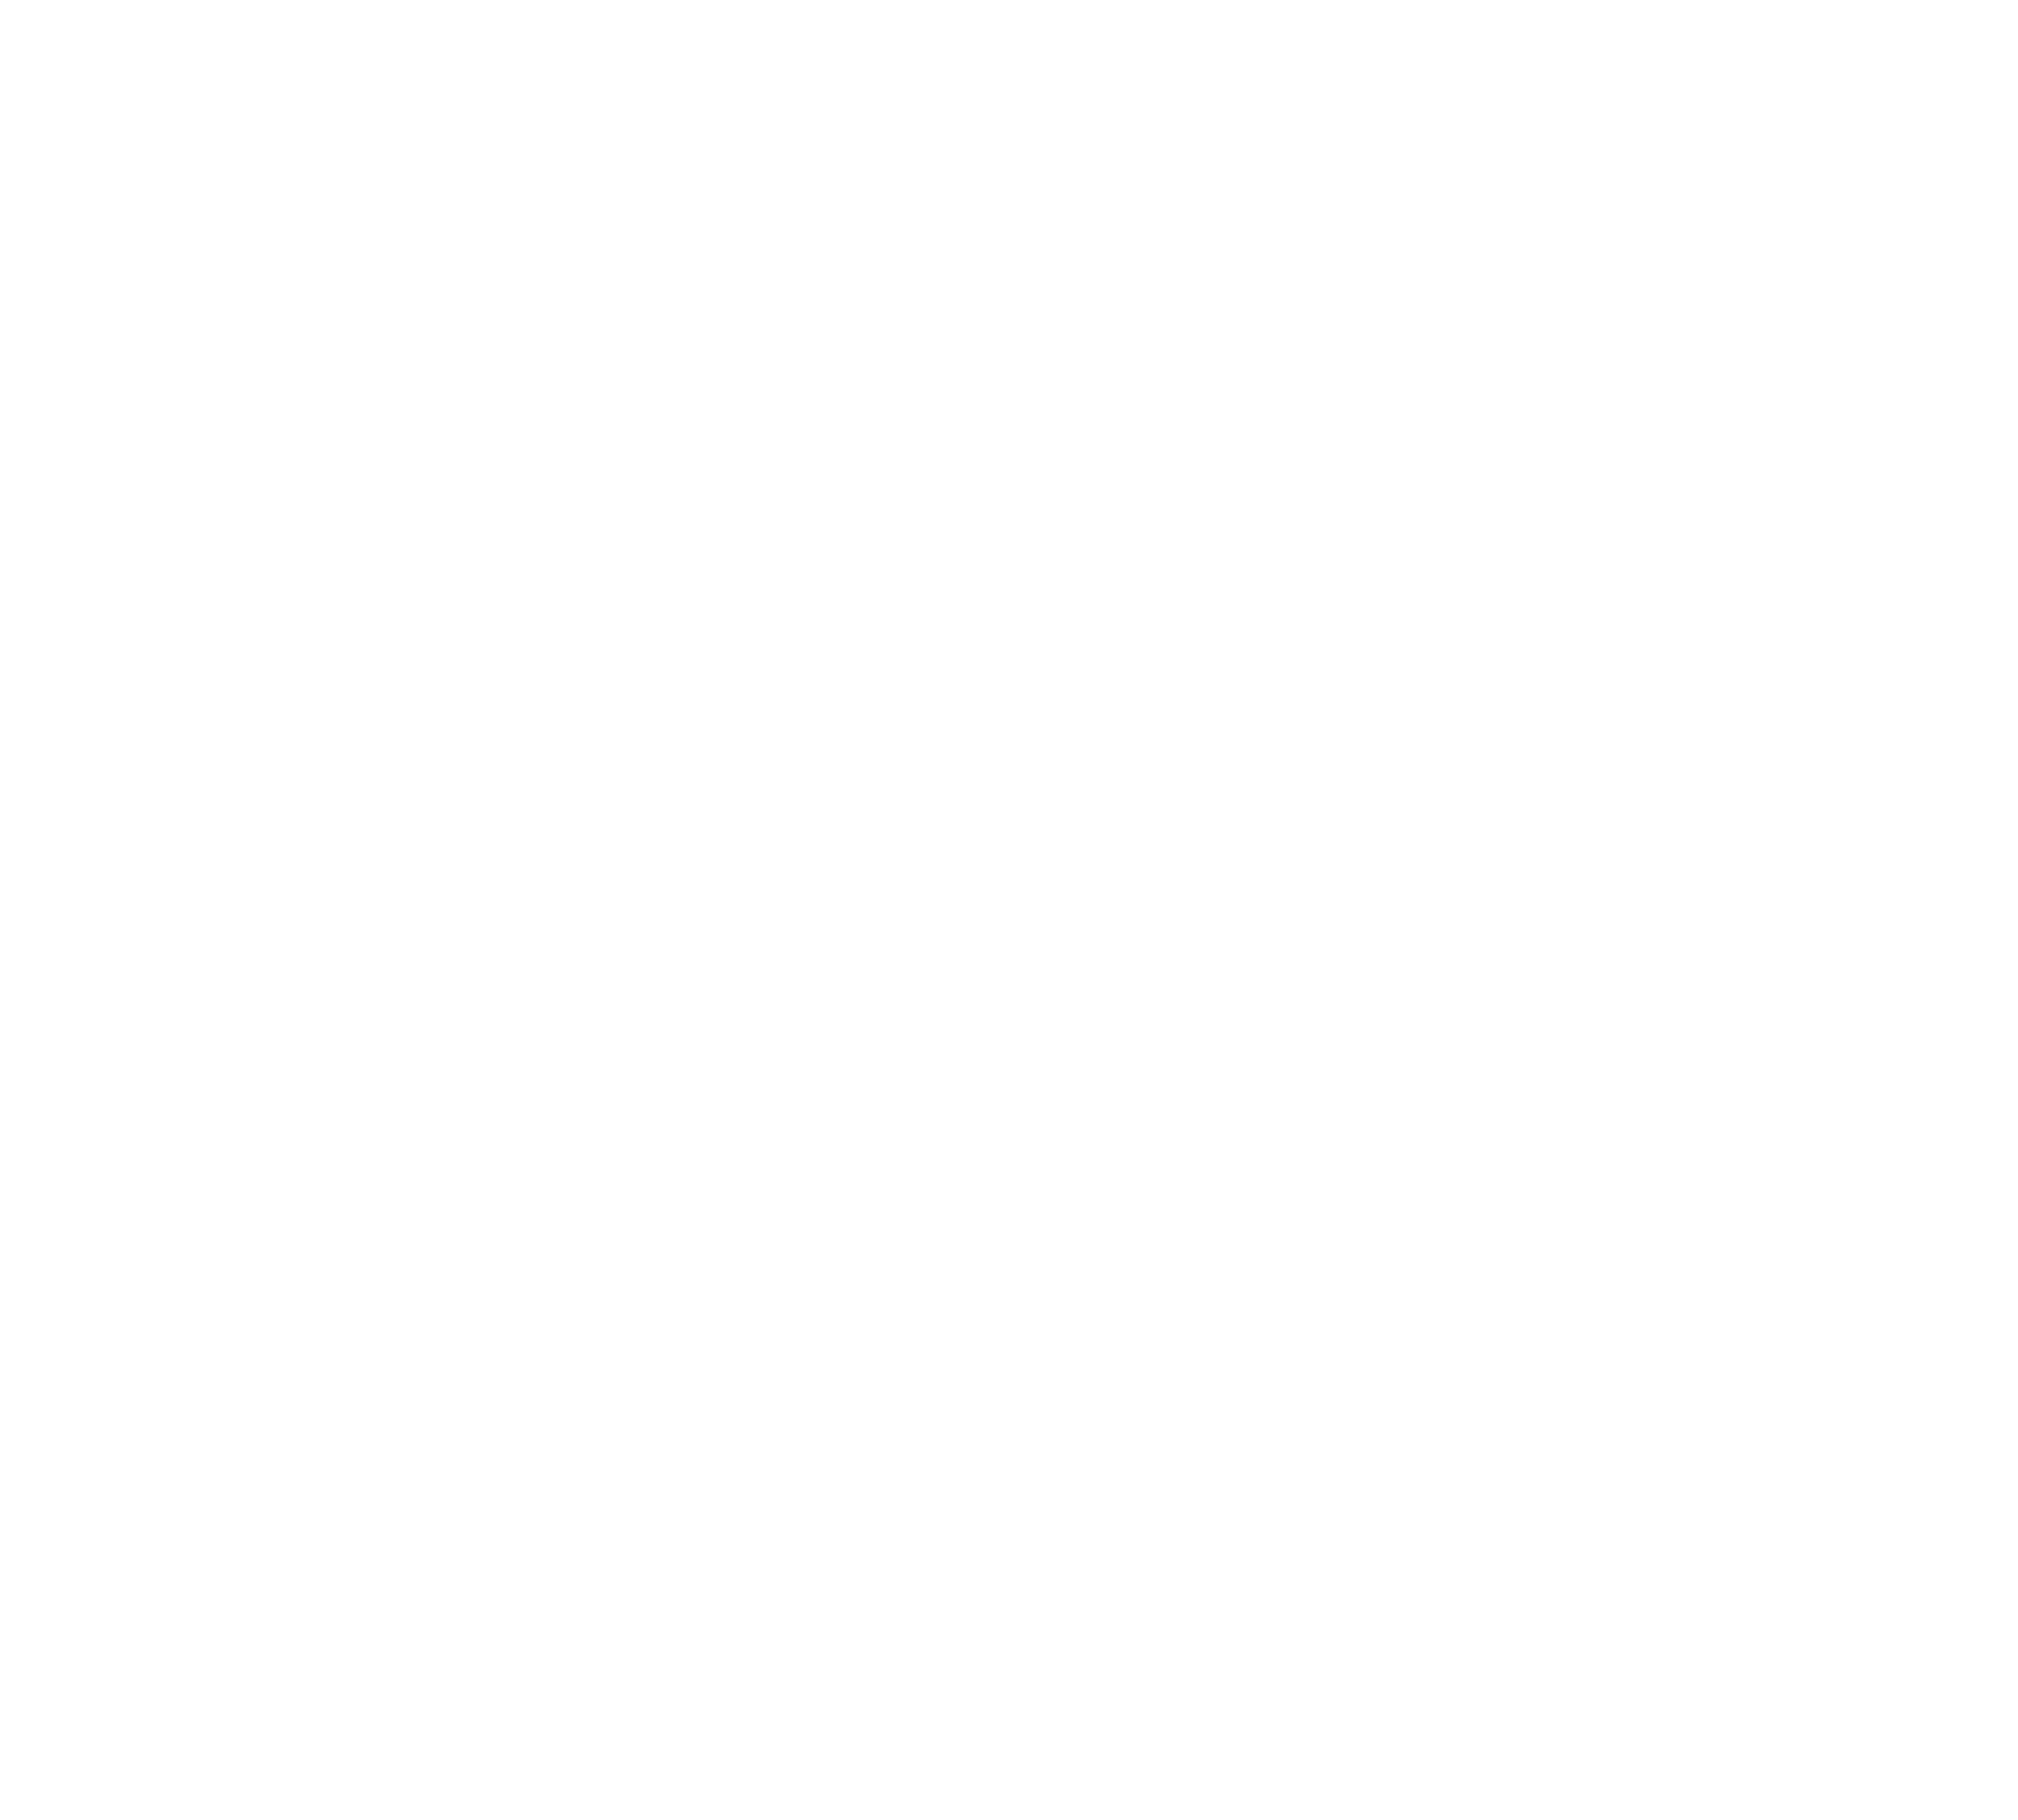 Play Date Studios